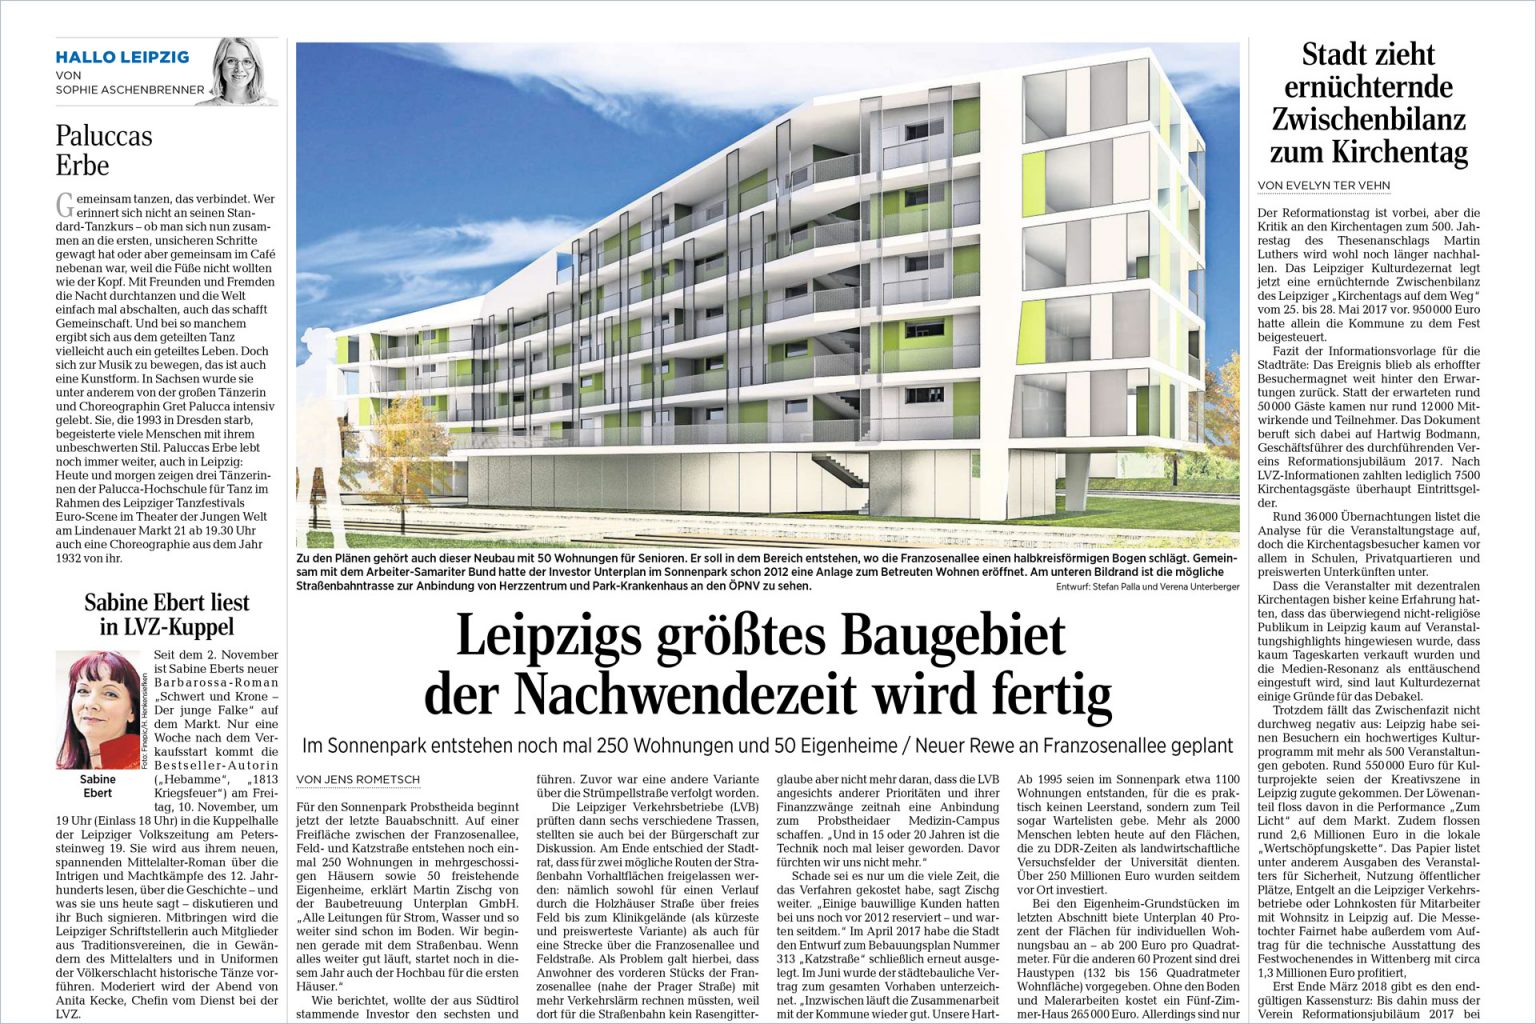 Größtes Baugebiet - Leipzig - 2018 - Unterplan Baubetreuung GmbH